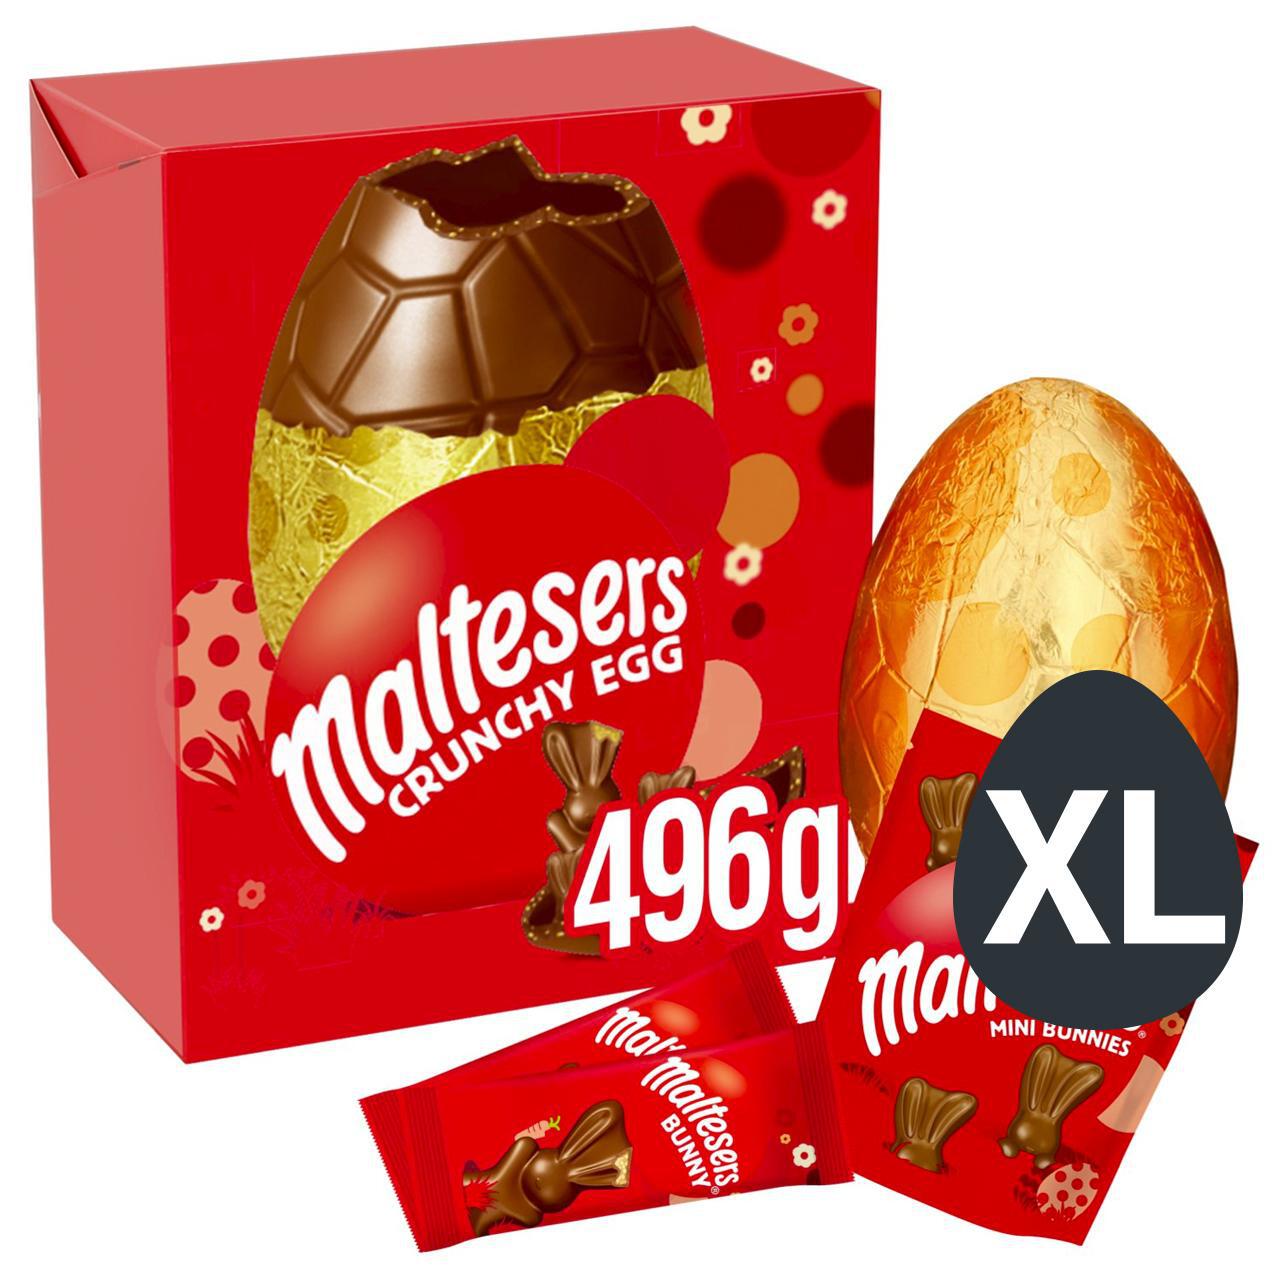 Maltesers Giant Easter Egg 496g